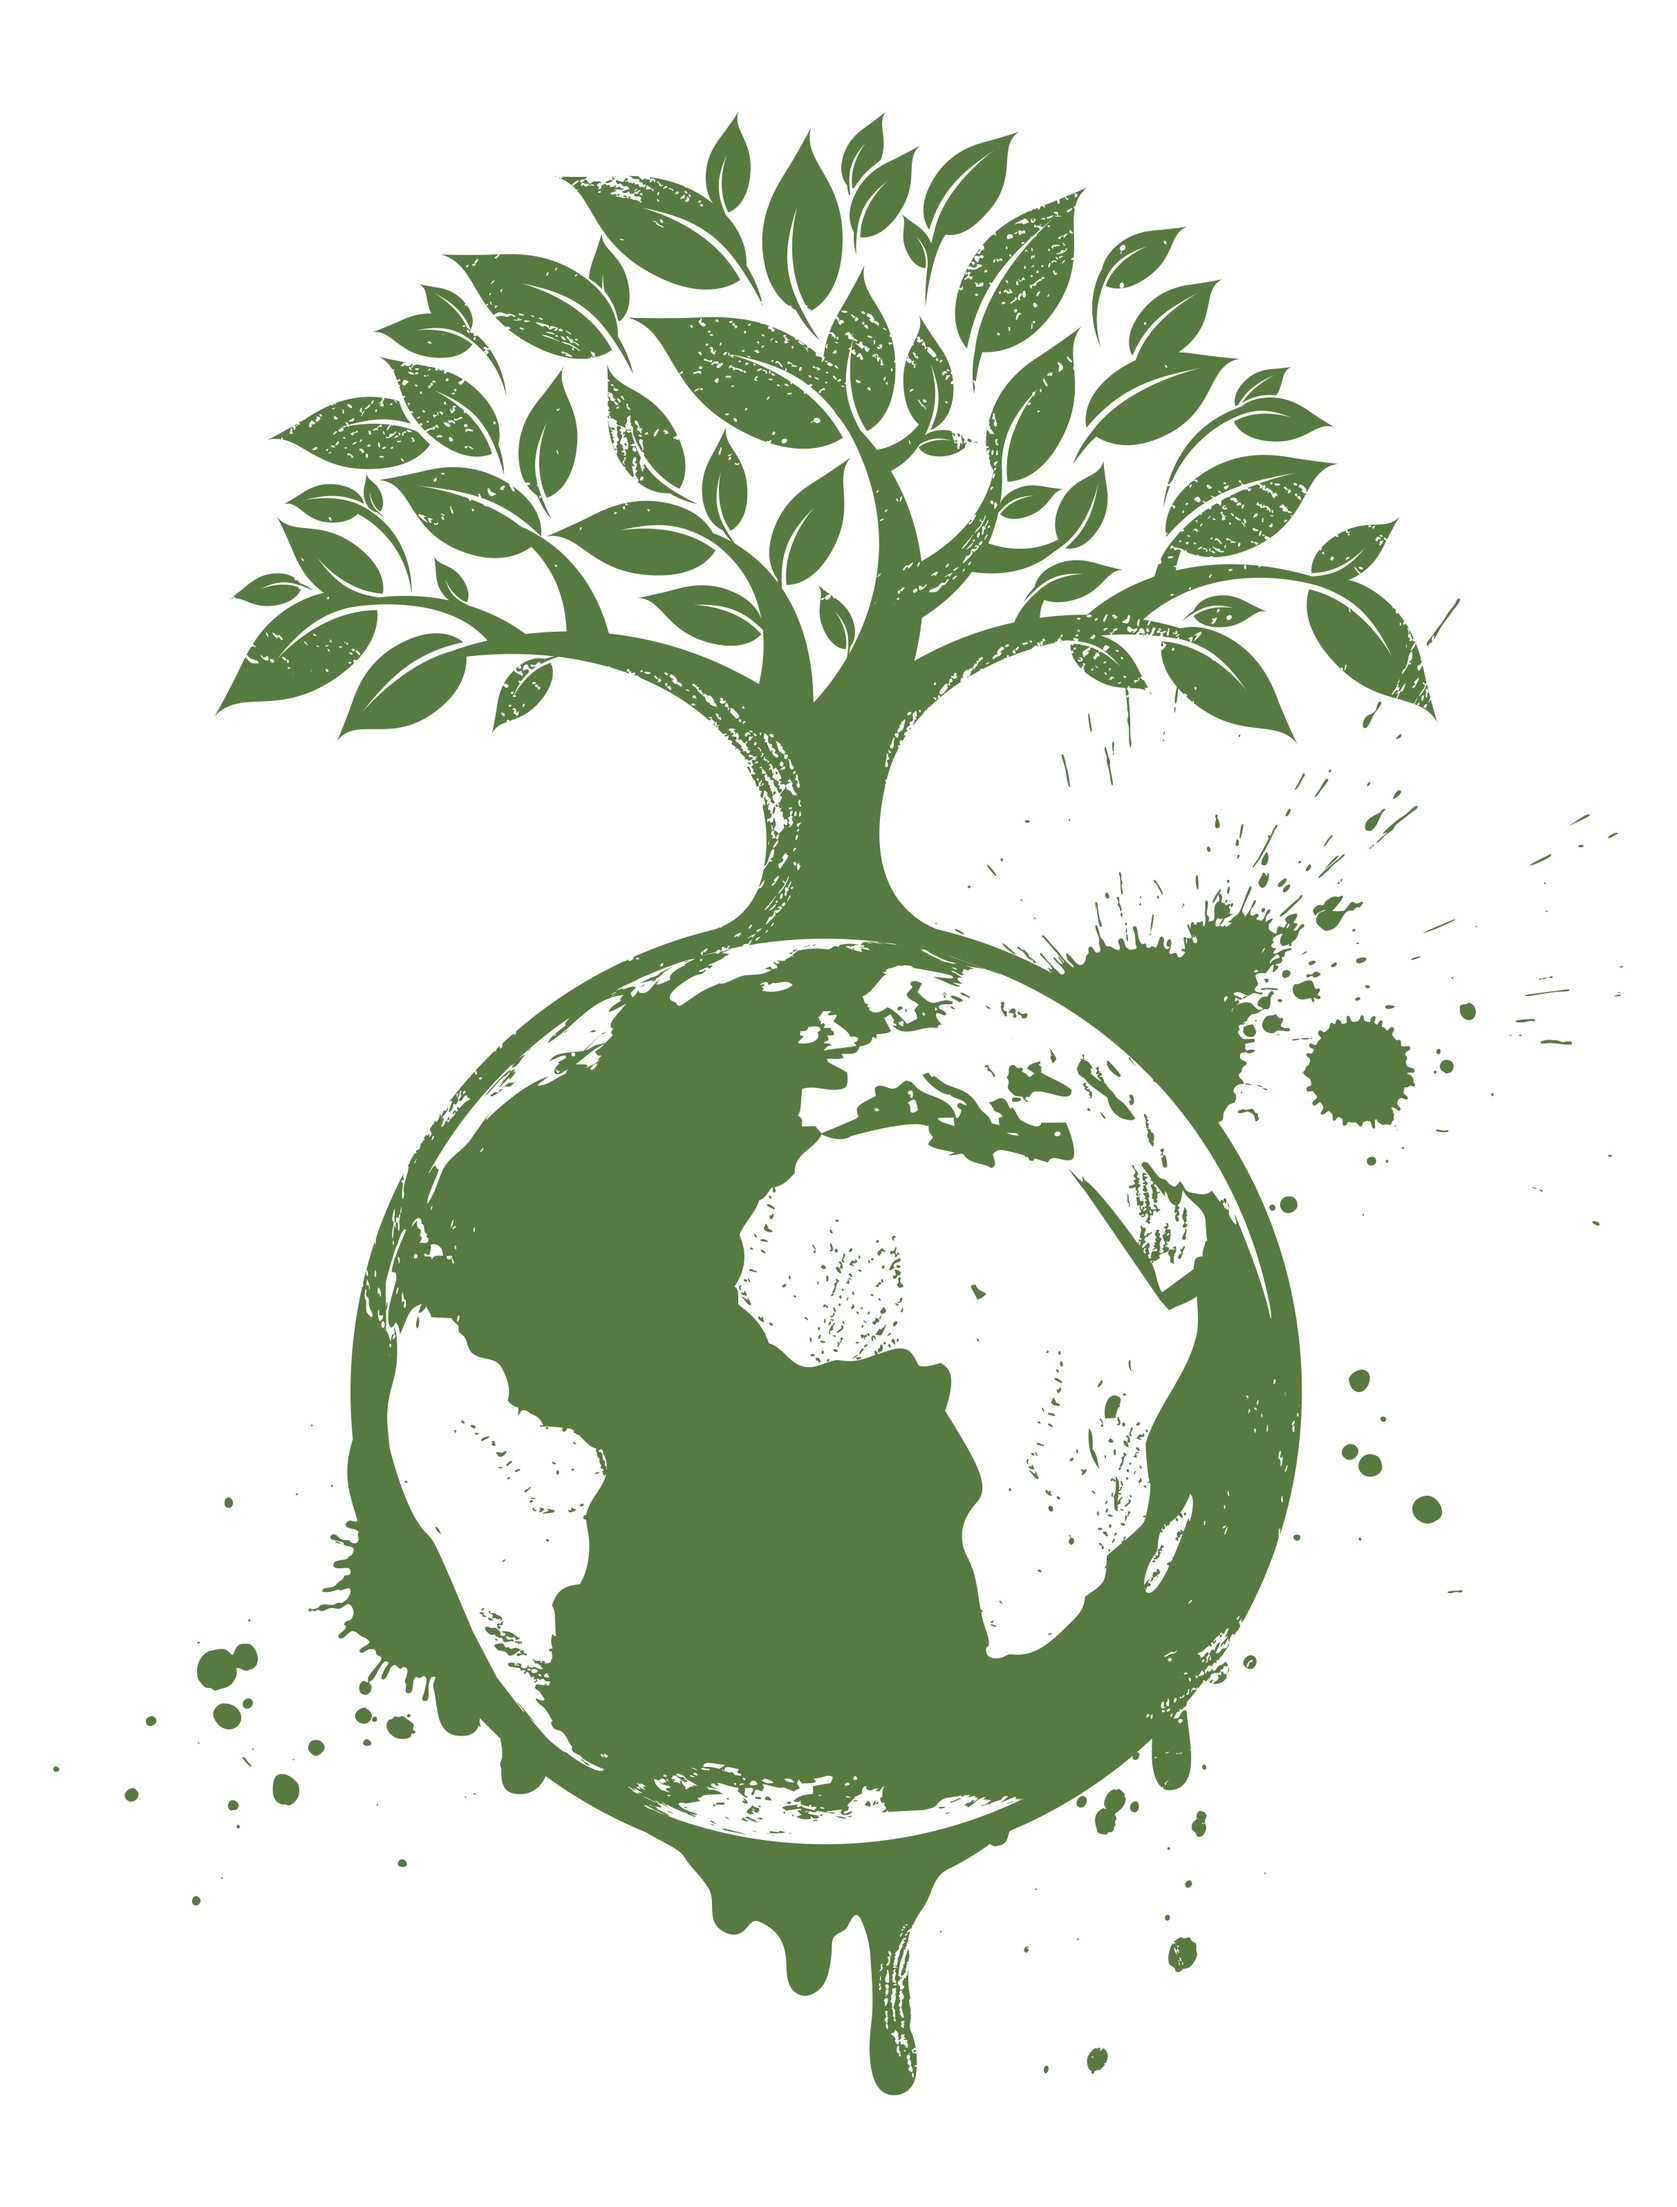 Green Evénements accompagnera la Conférence sur le climat à Paris